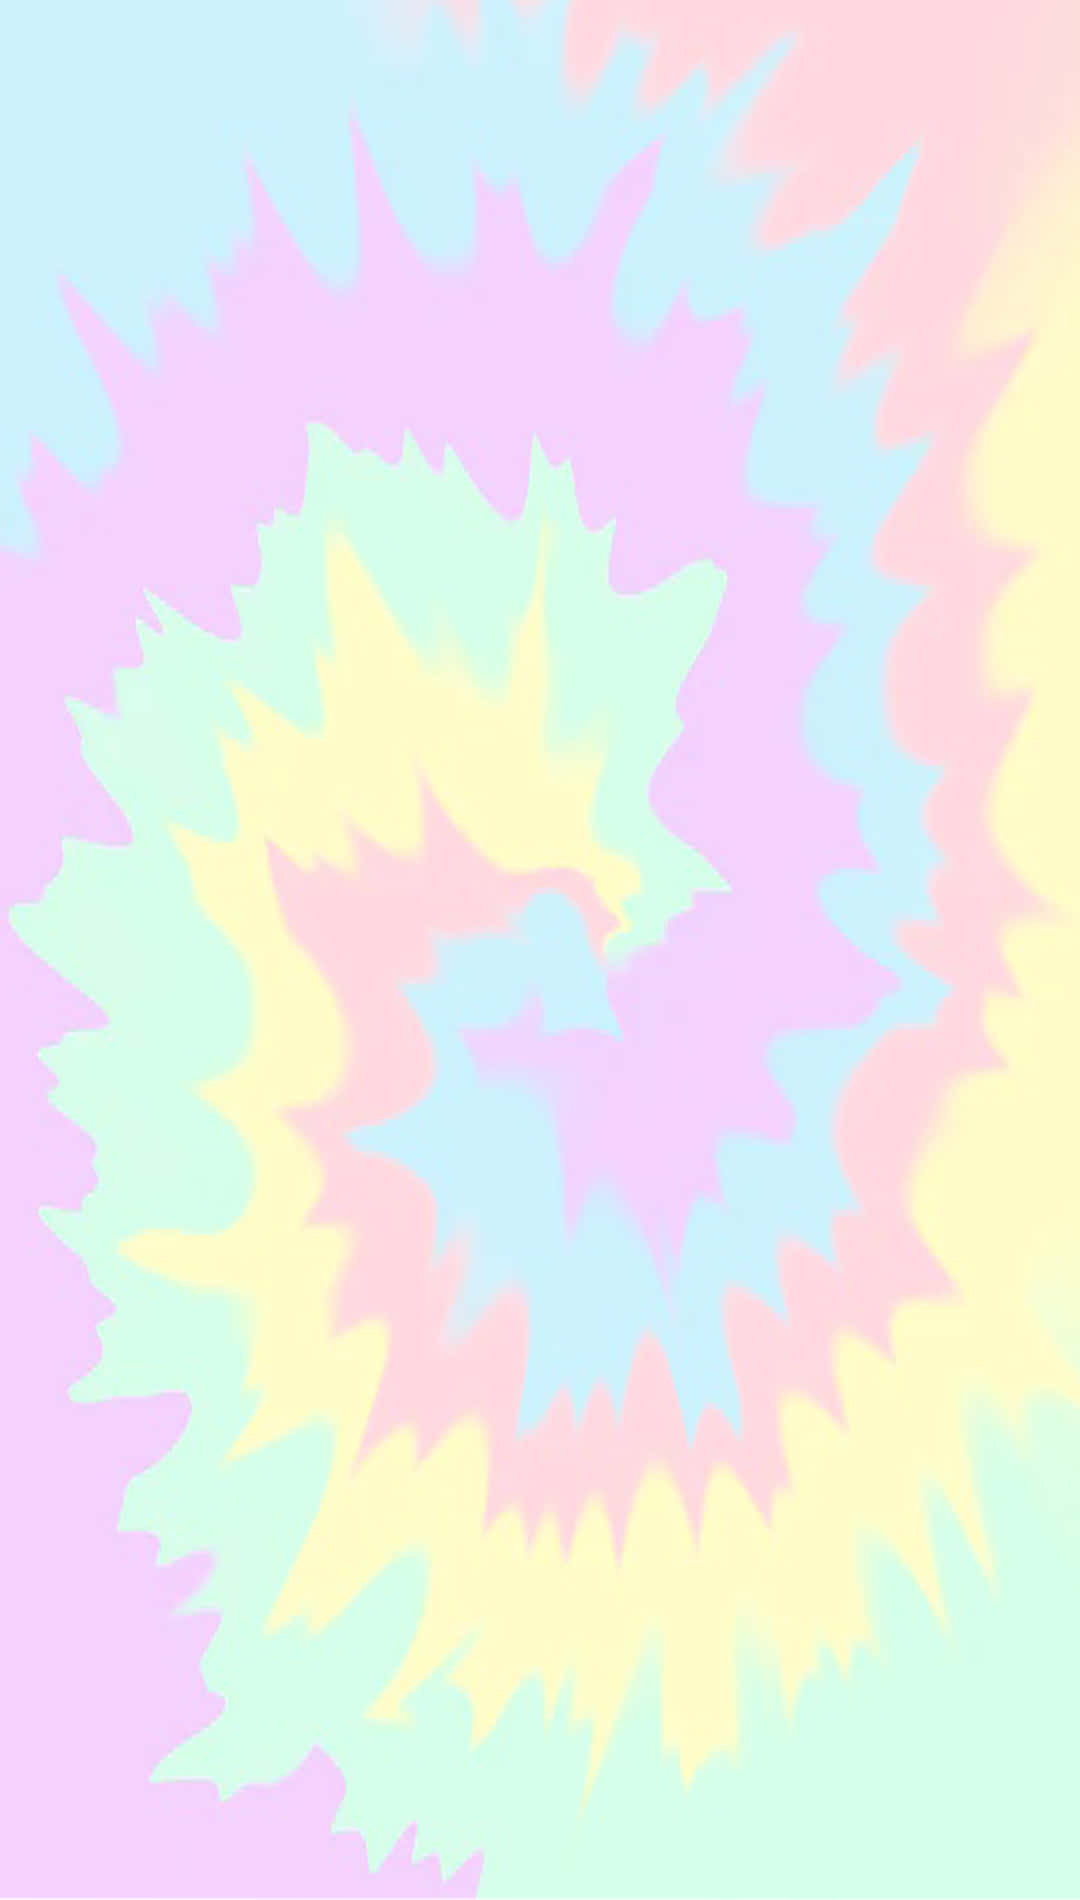 Spetsigamagentafärgade Spiralerv Med Pastellfärgad Tie Dye-bakgrund